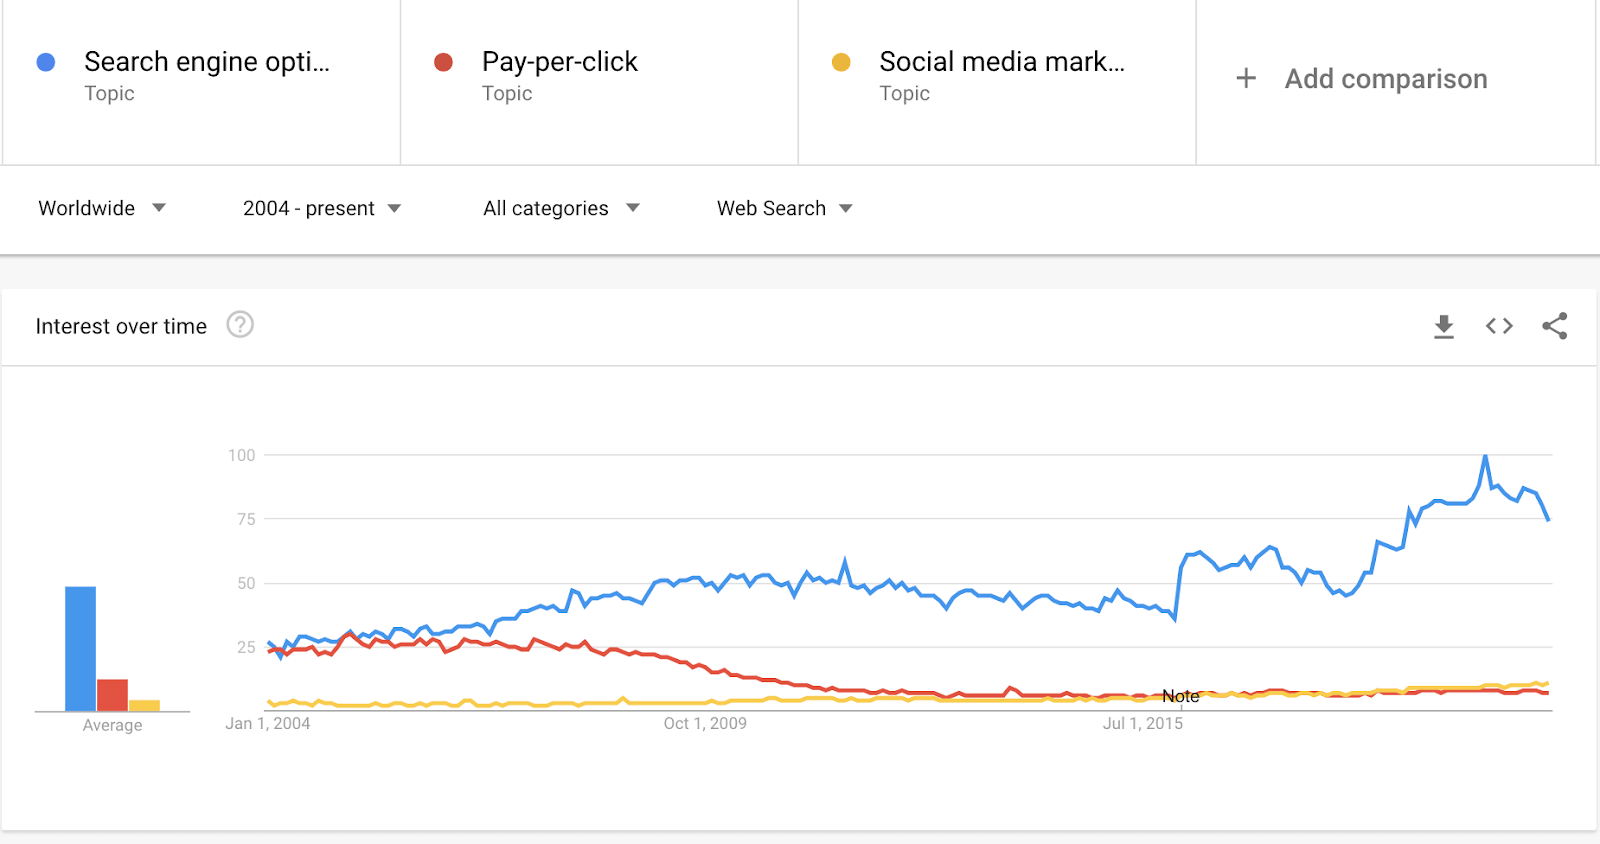 Google TrendsによるSEOとペイパークリックやソーシャルメディアマーケティングの比較。